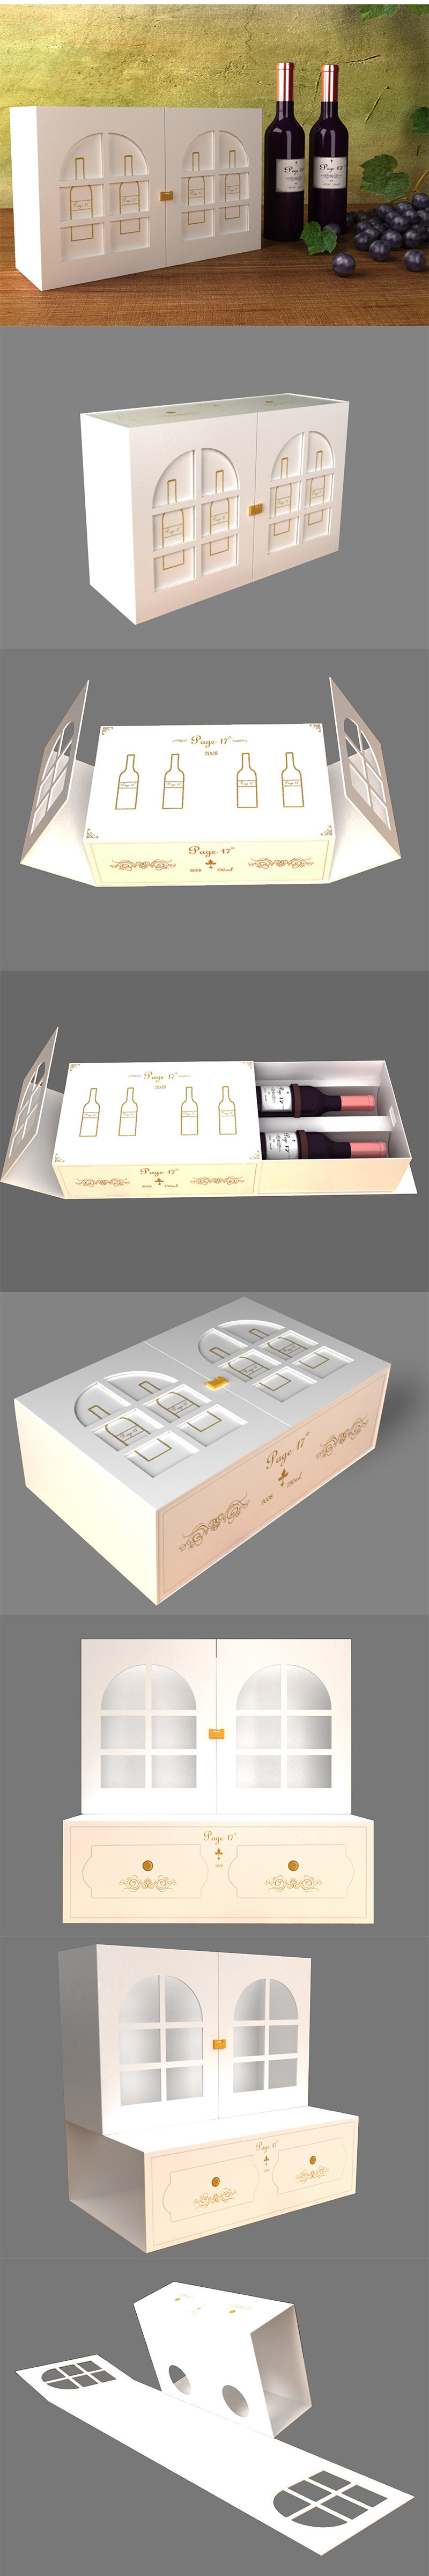 创意趣味互动高档红酒礼盒包装设计